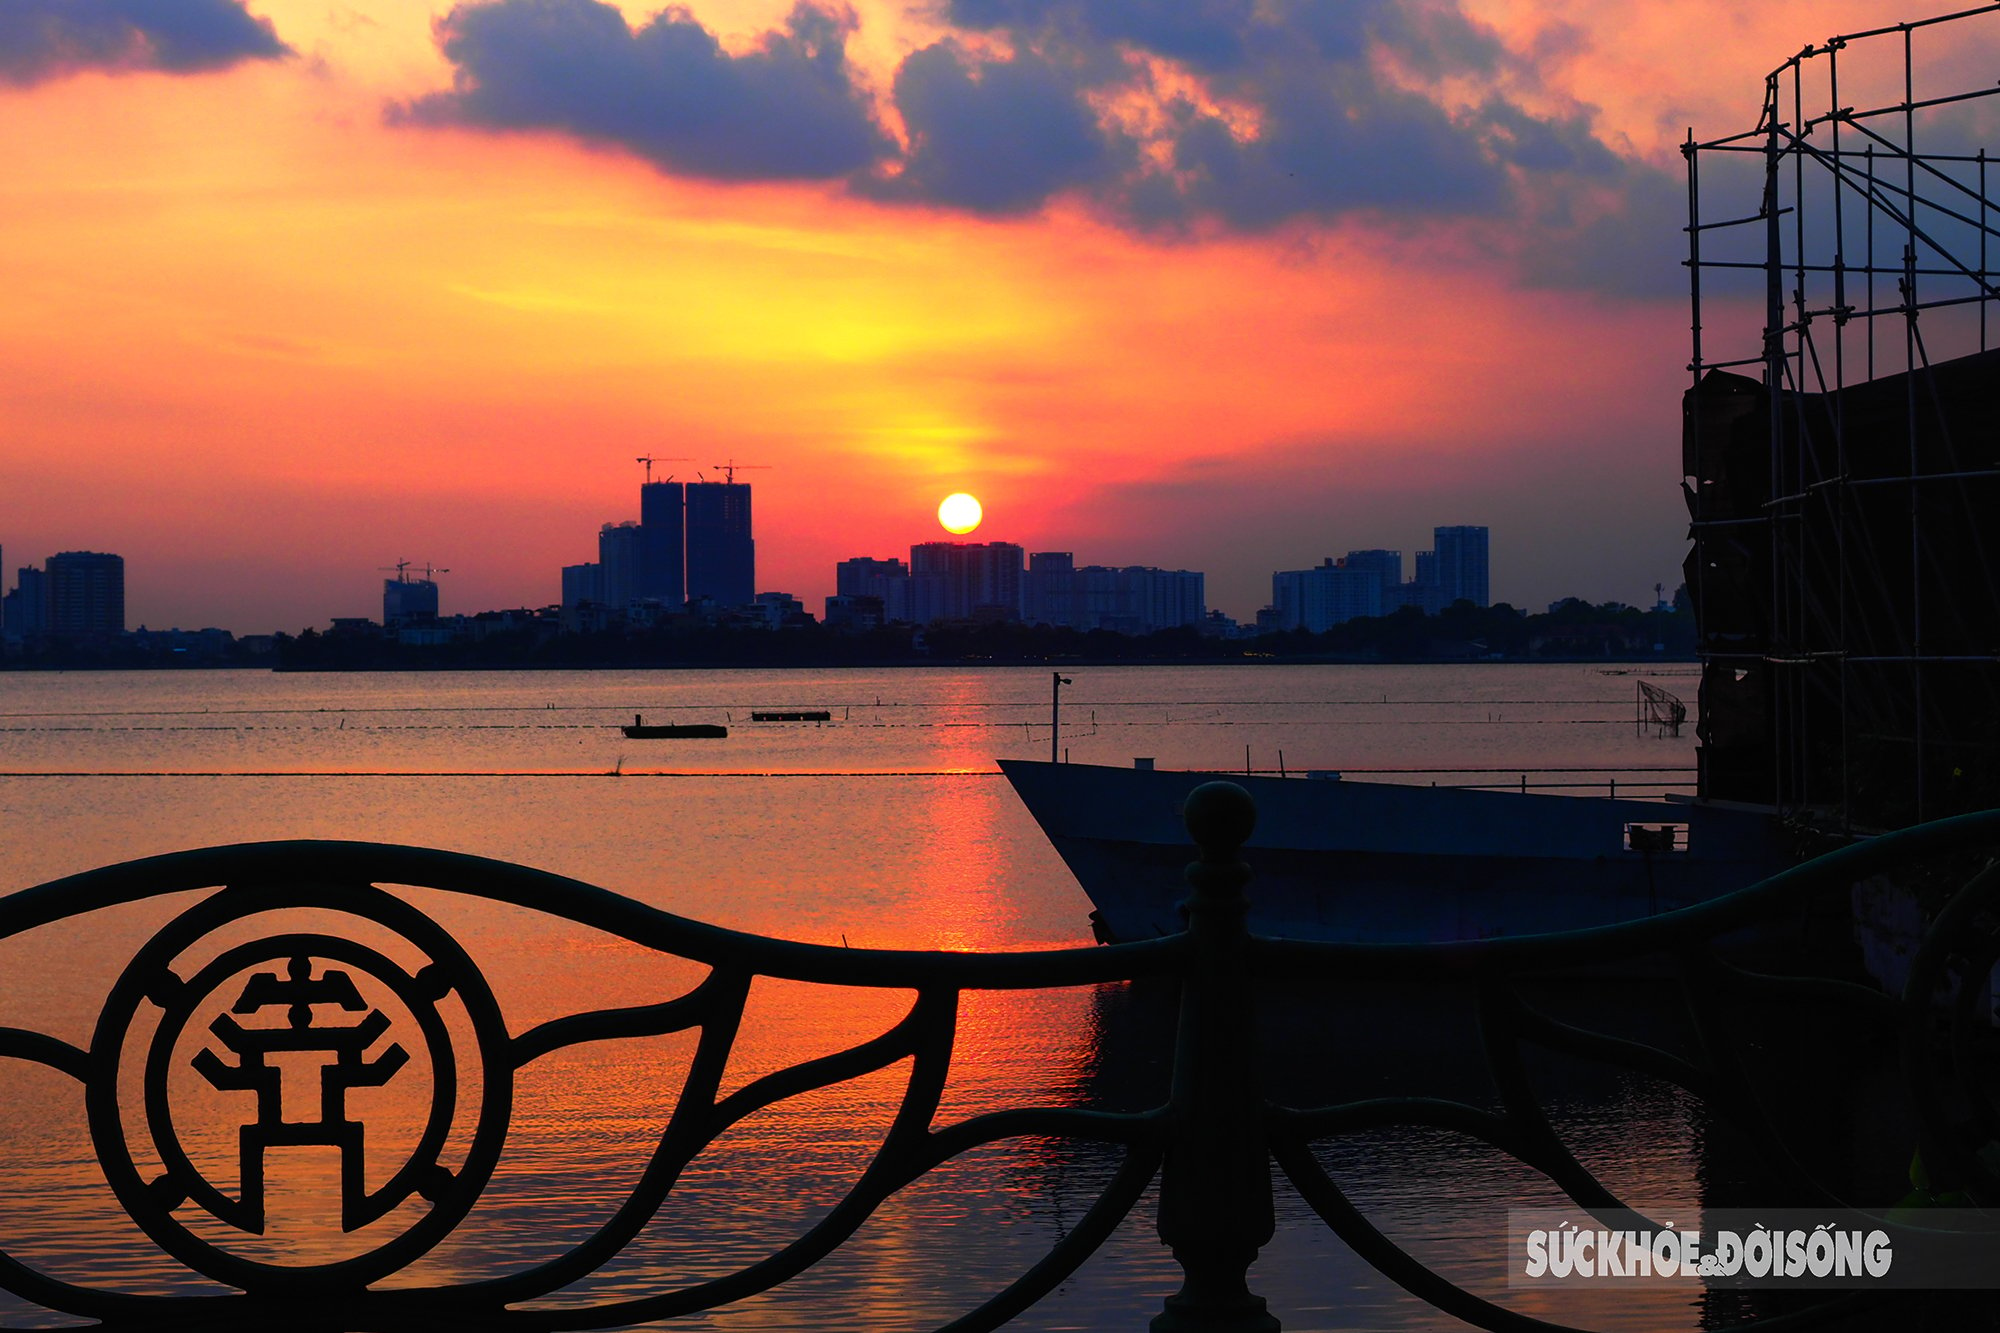 Hồ Tây là một trong những điểm đến nổi tiếng tại Hà Nội. Đến đây, bạn sẽ được chiêm ngưỡng vẻ đẹp của hồ, tận hưởng cuộc sống đầy đủ năng lượng mà chỉ có ở thành phố này. Hãy thư giãn, tận hưởng cuộc sống và tìm hiểu về văn hóa của vùng đất này khi đến thăm Hồ Tây.